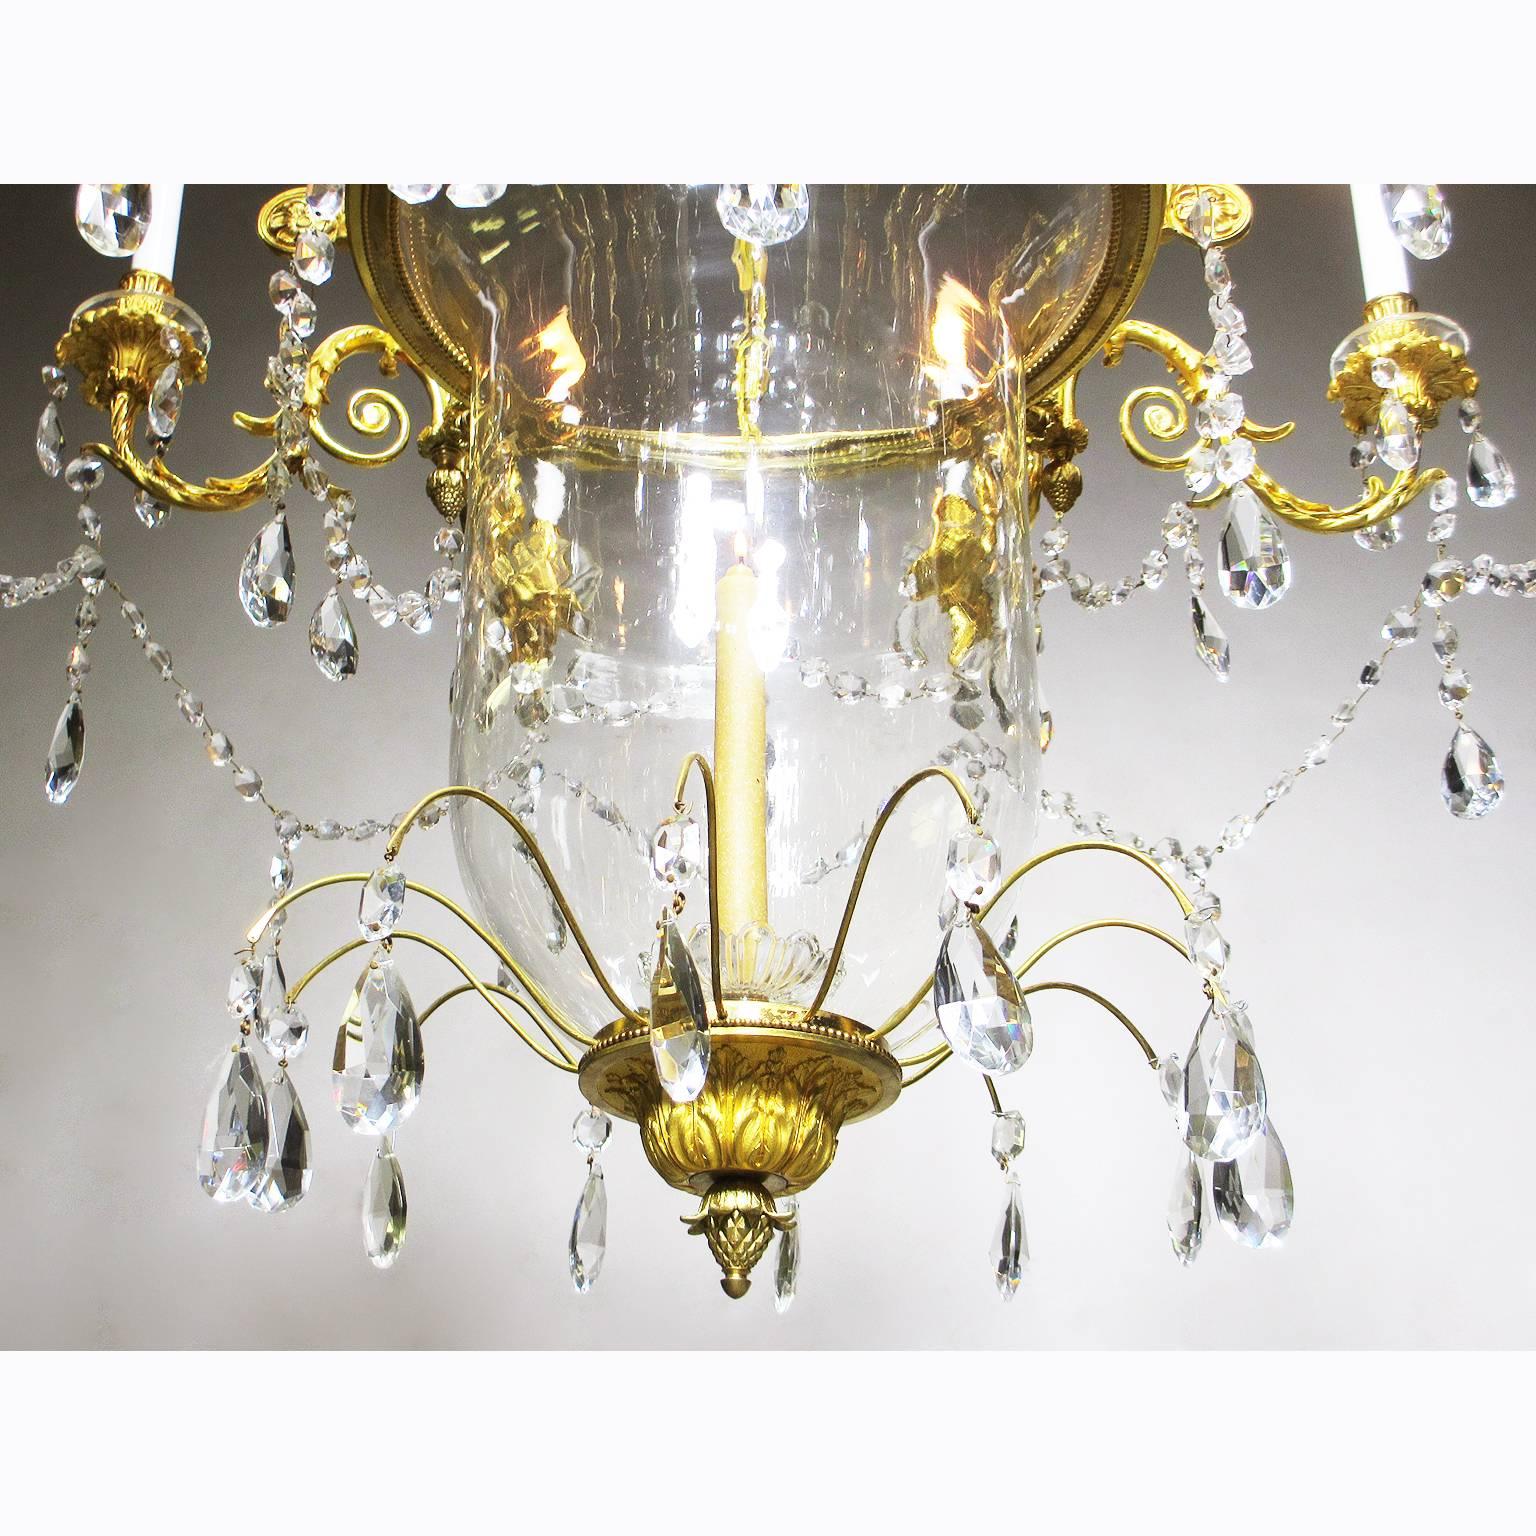 Ein sehr schöner und seltener französischer achtflammiger Kronleuchter im Louis XV-Stil von Mottheau et Fils, Paris, mit Ormolu-Montierung und geschliffenem Glas und einer aufgehängten glockenförmigen Kerzenschale aus geblasenem Glas. Der